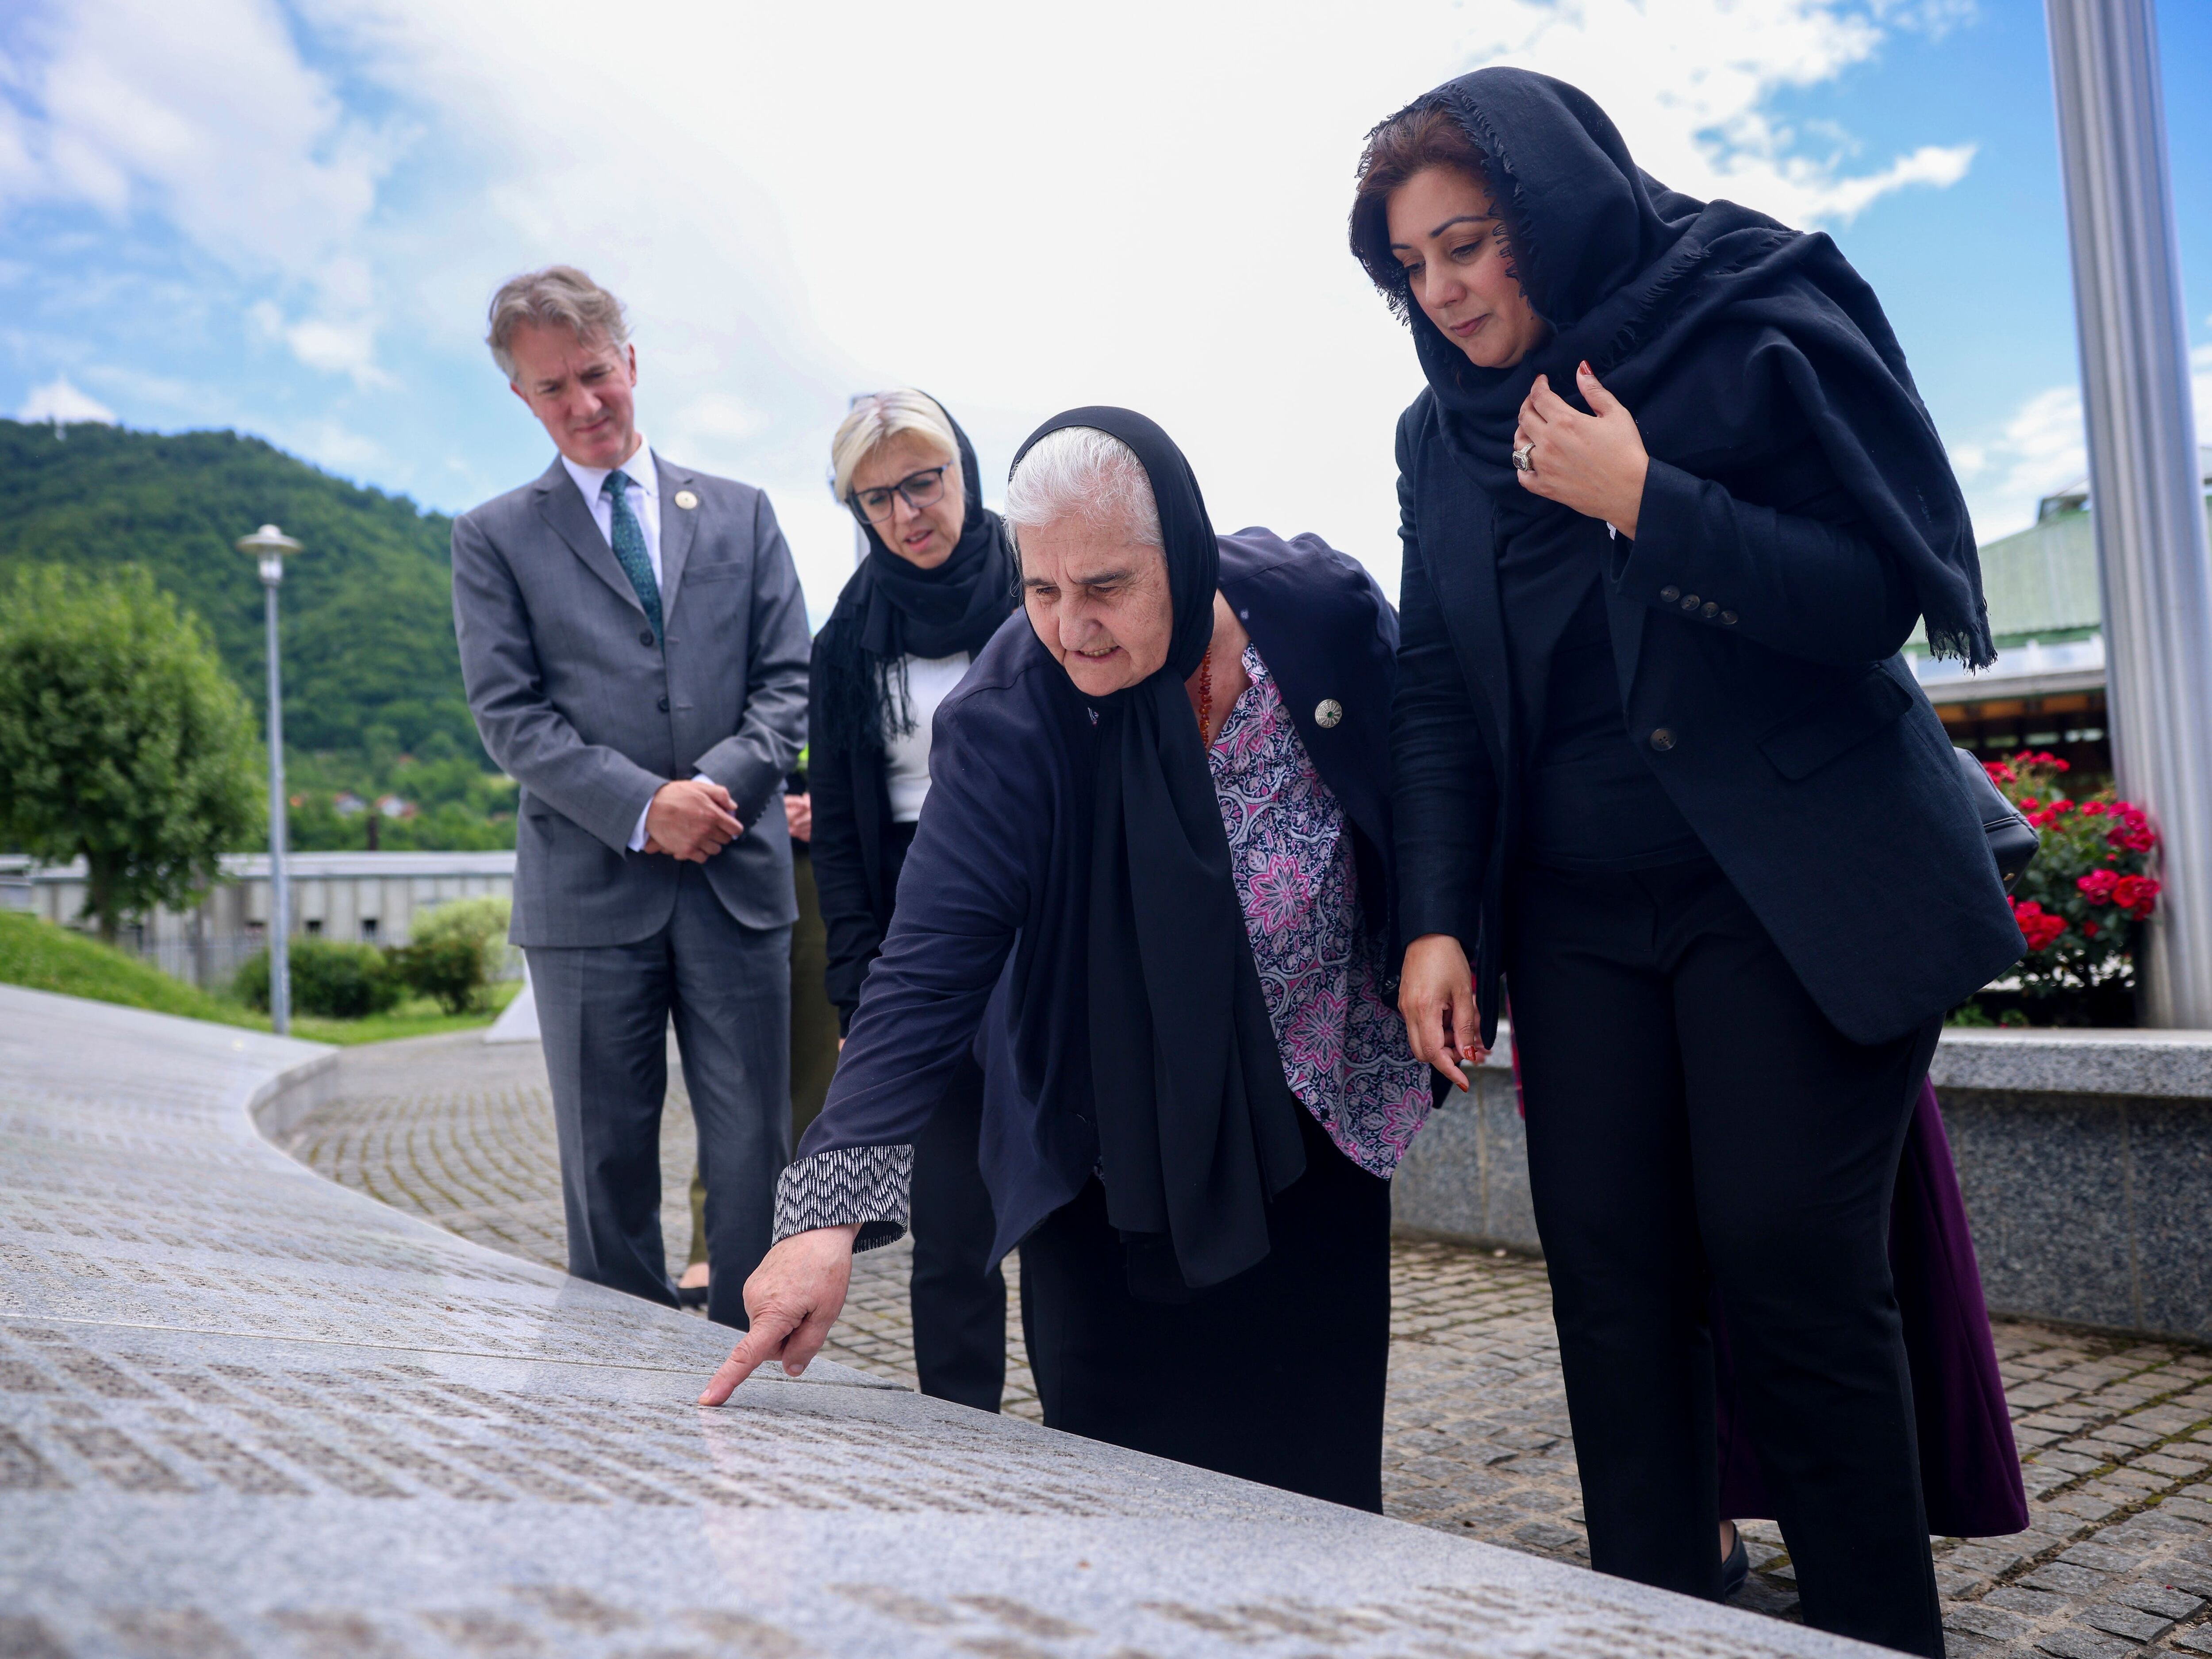 UN approves resolution to commemorate 1995 Srebrenica massacre annually